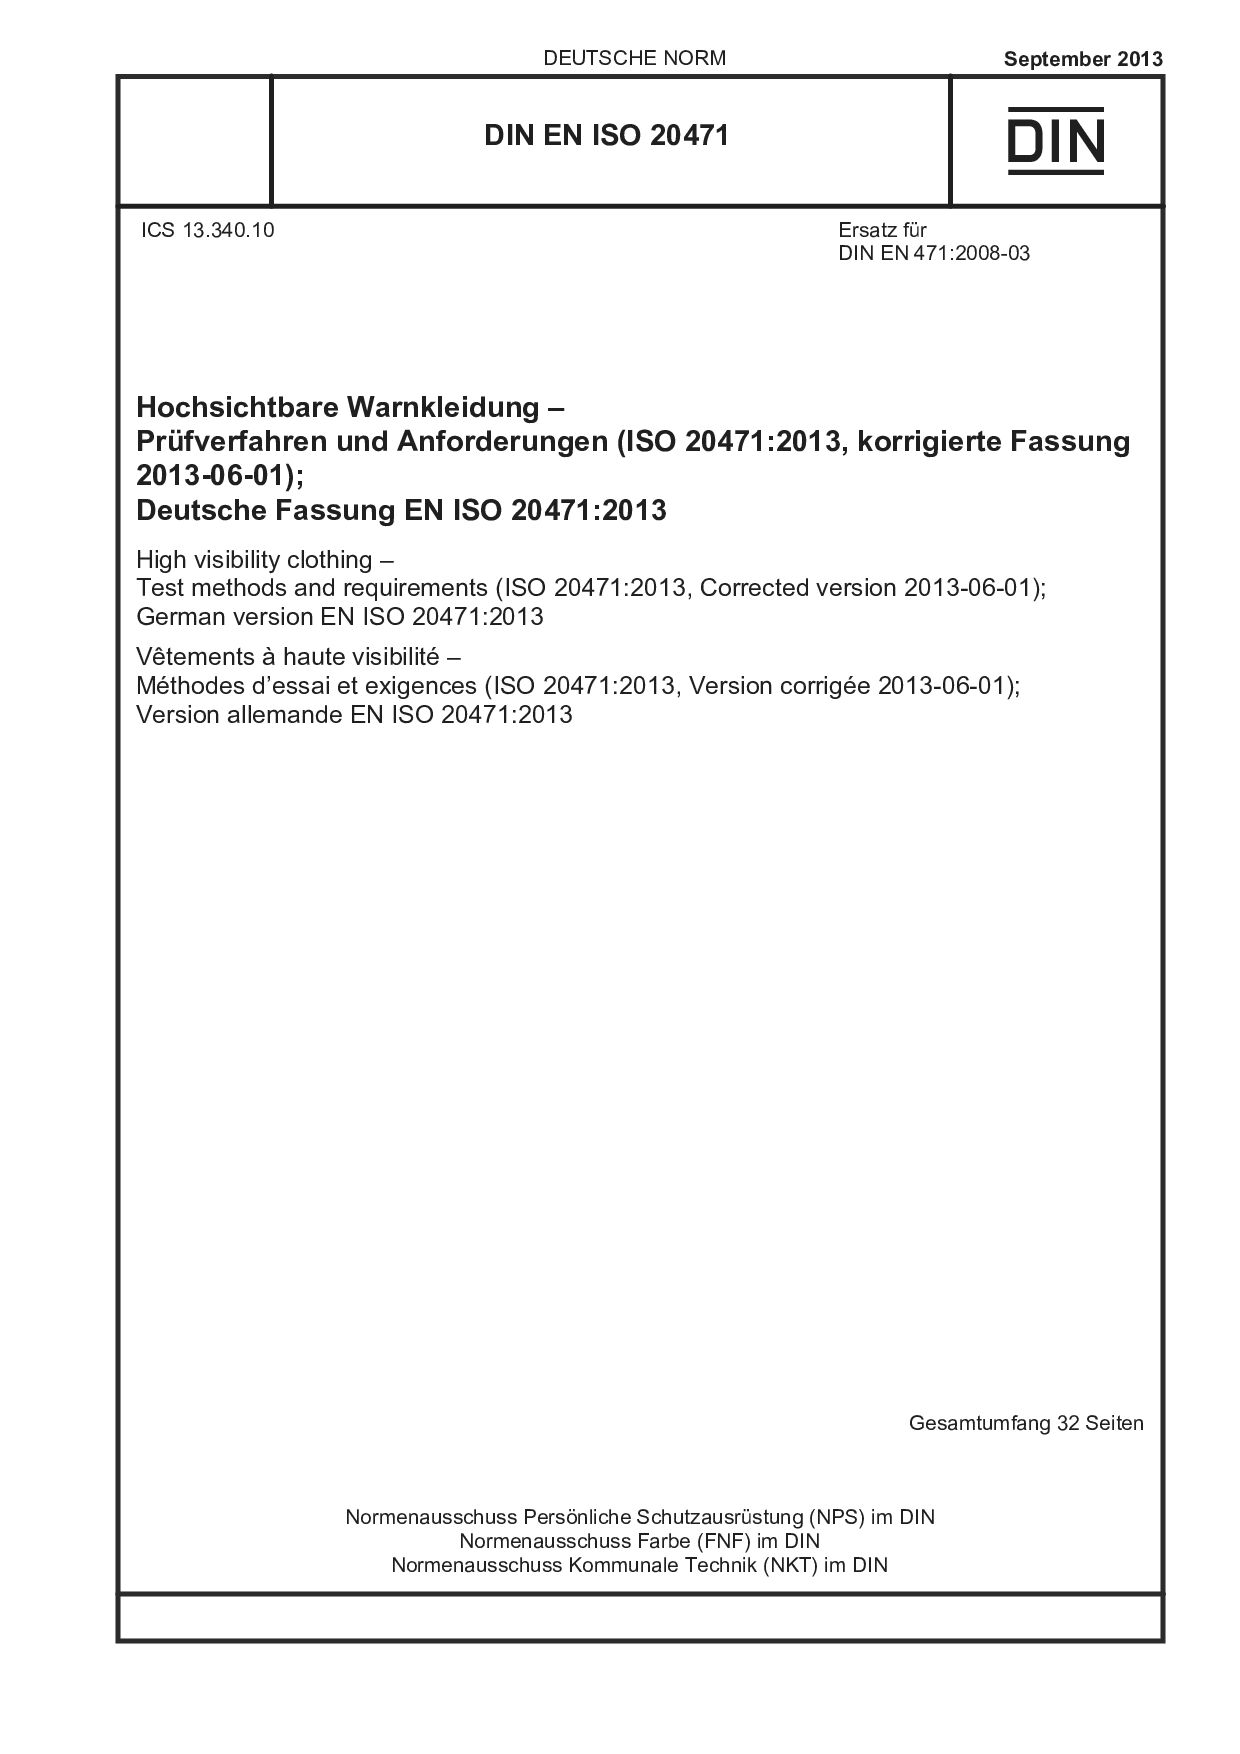 DIN EN ISO 20471:2013封面图